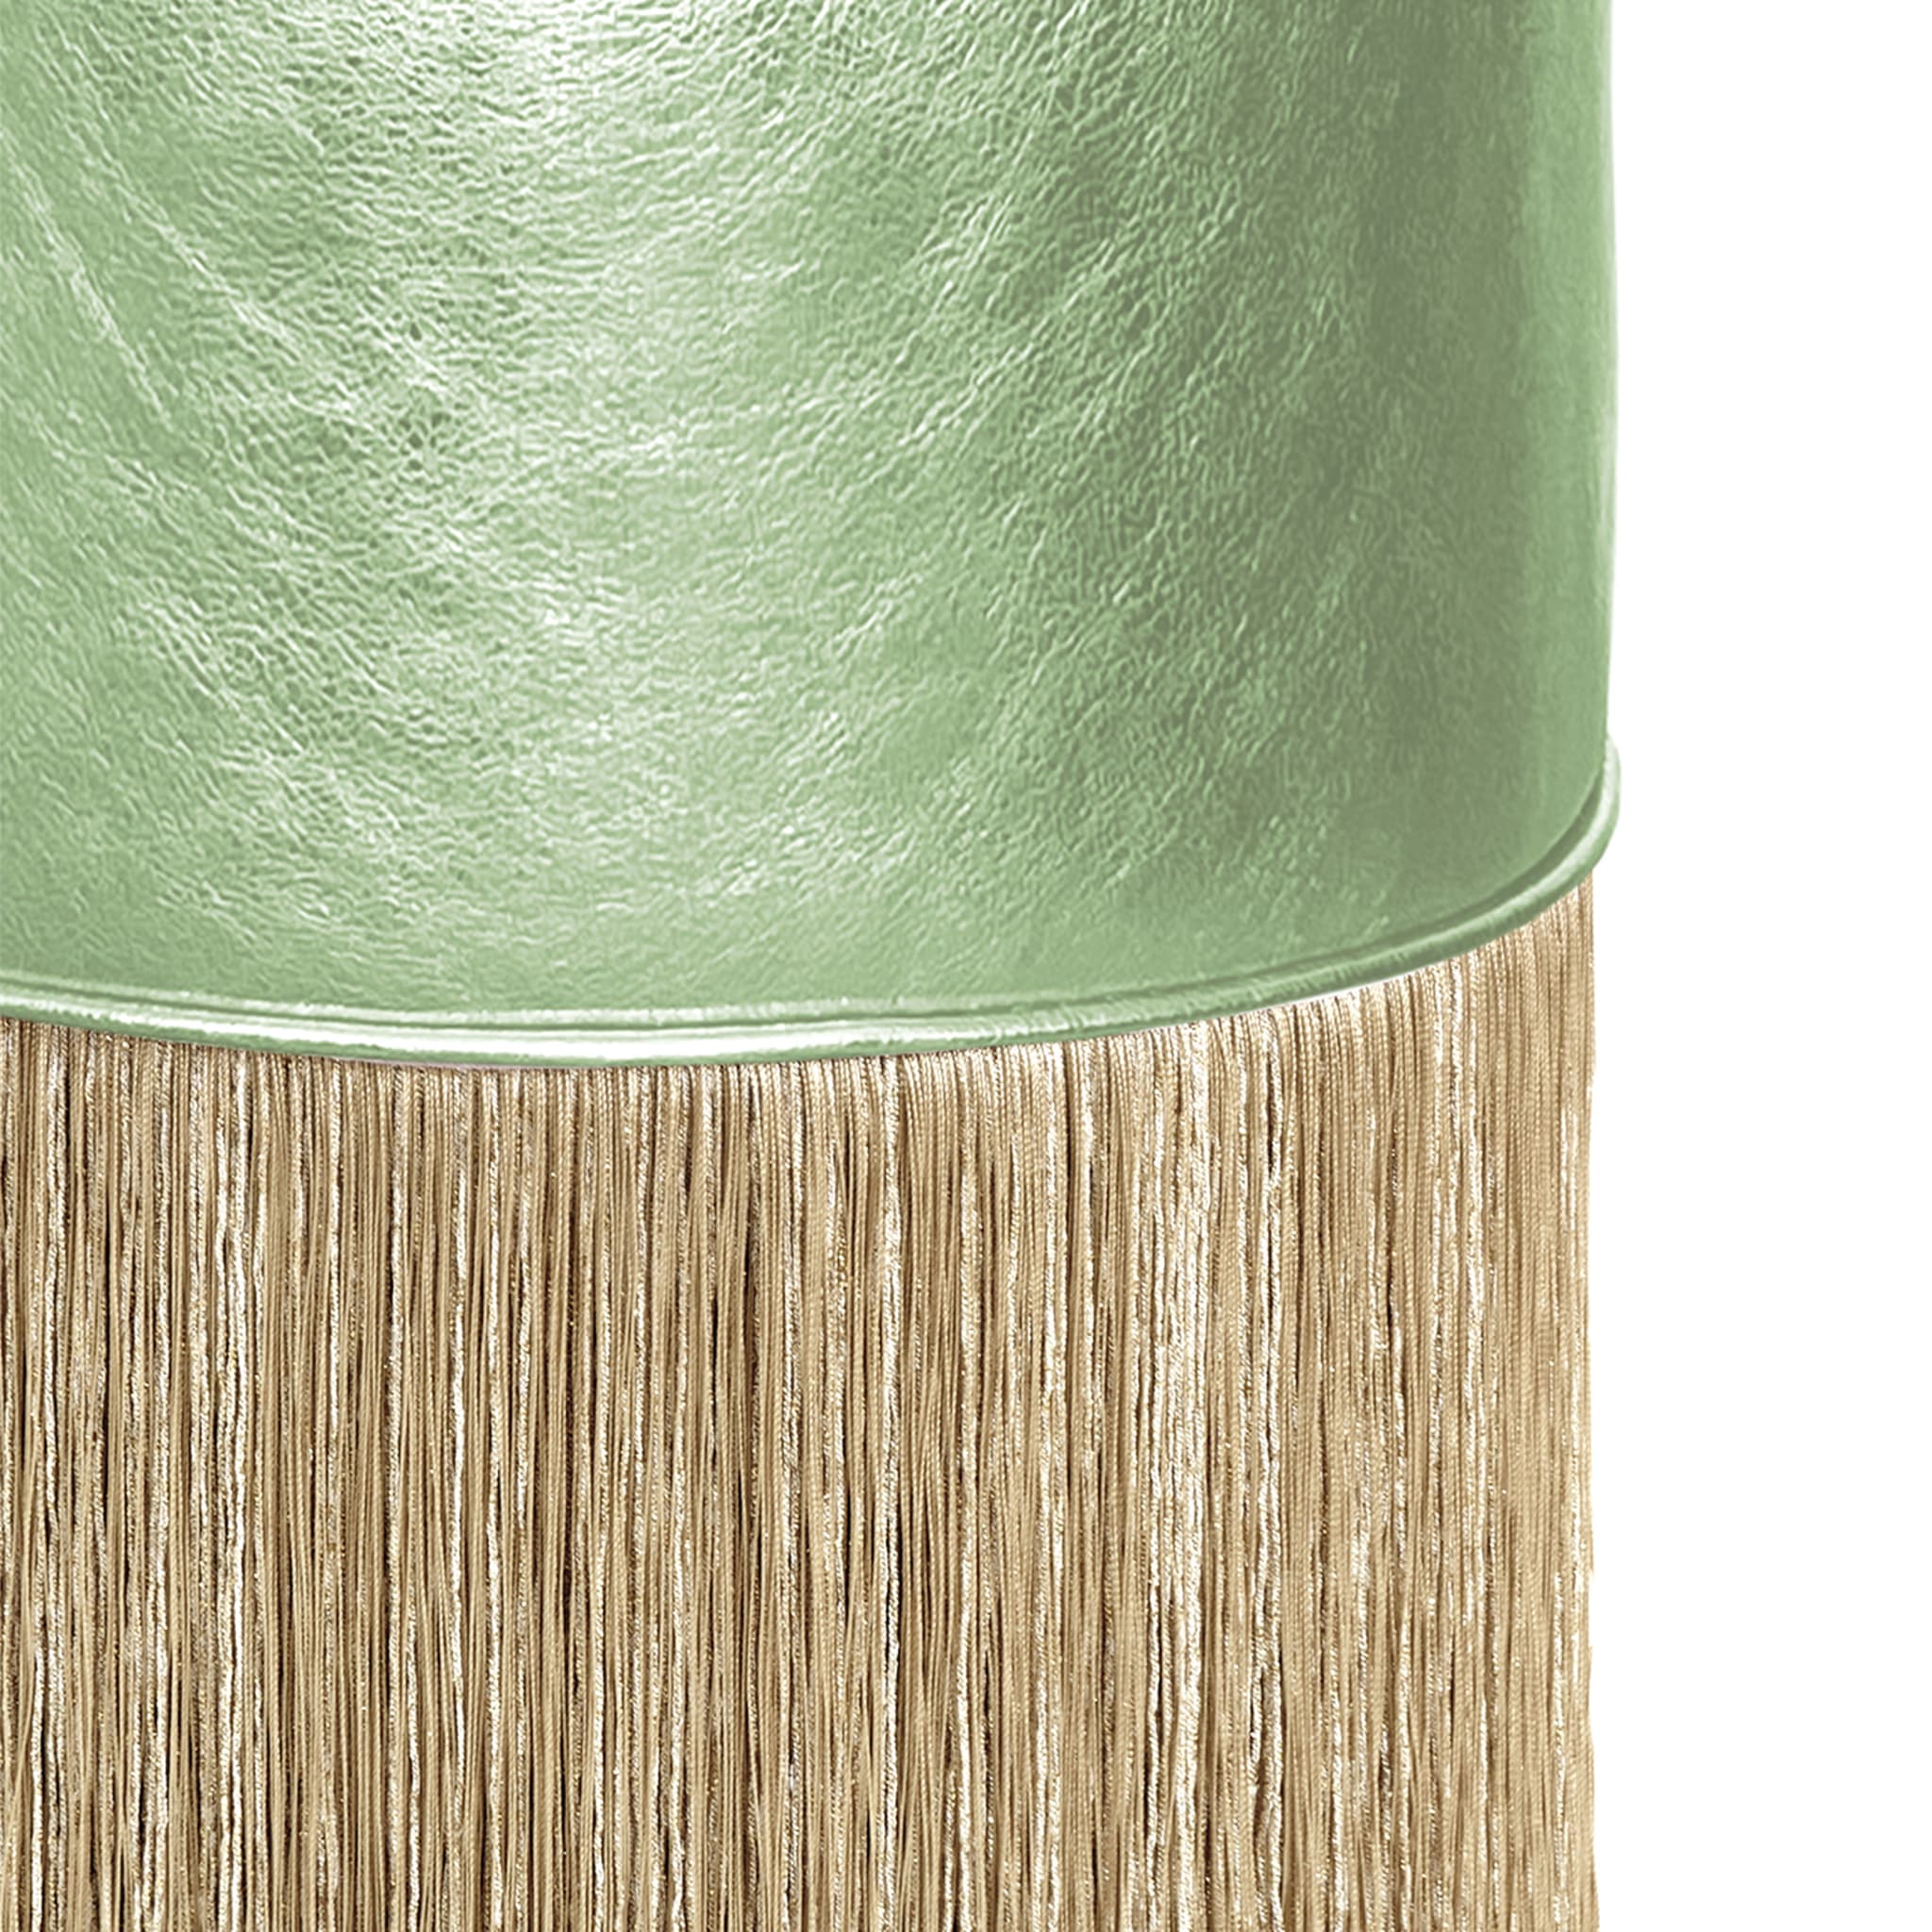 Pouf en cuir vert clair à franges dorées de Lorenza Bozzoli - Vue alternative 1